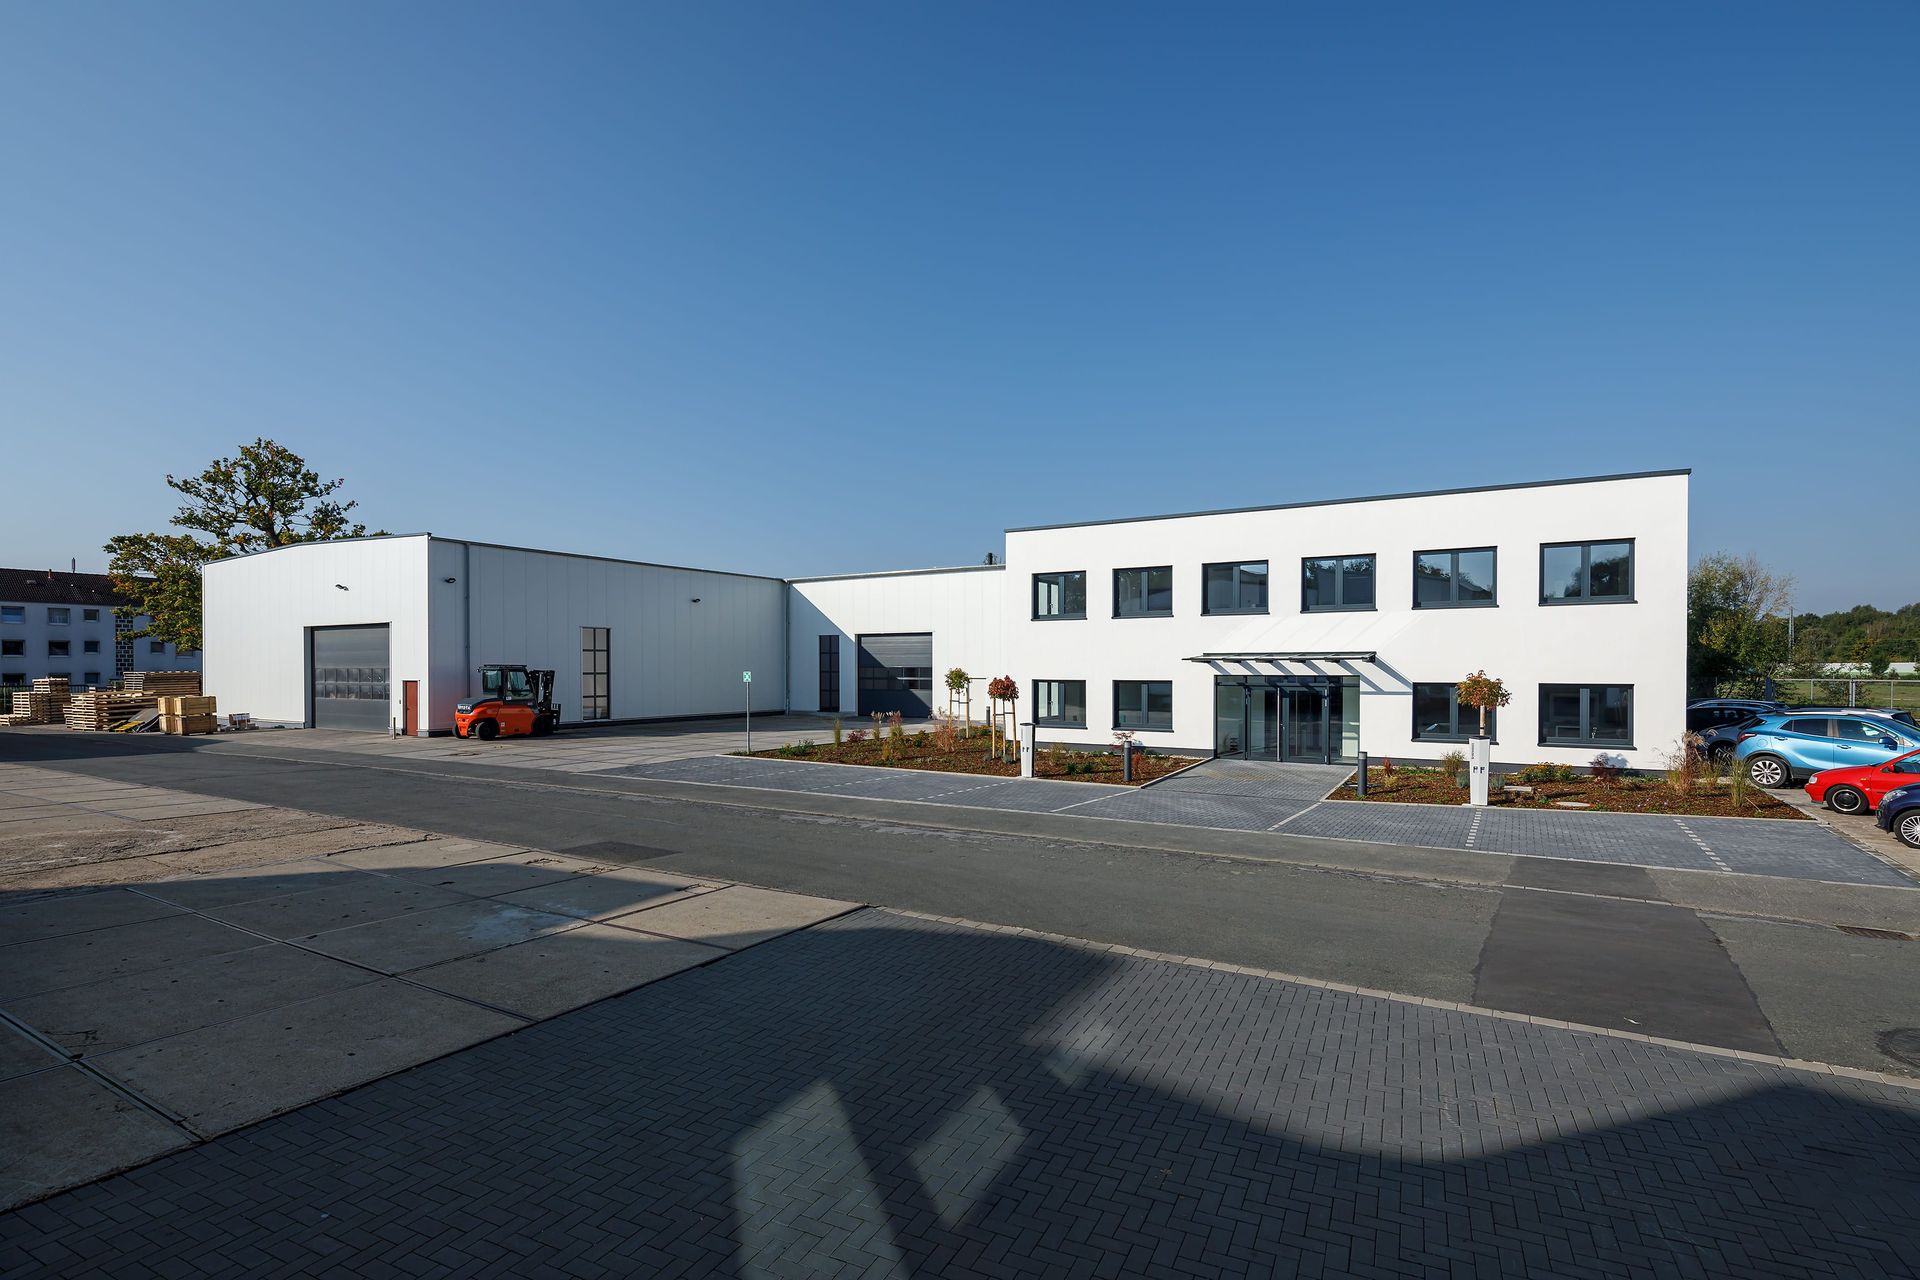 Krampe GmbH & Co. KG in Hamm, Nordrhein-Westfalen- Außenansicht des Erweiterungsbaus mit Montagehalle und angeschlossenen Bürogebäuden